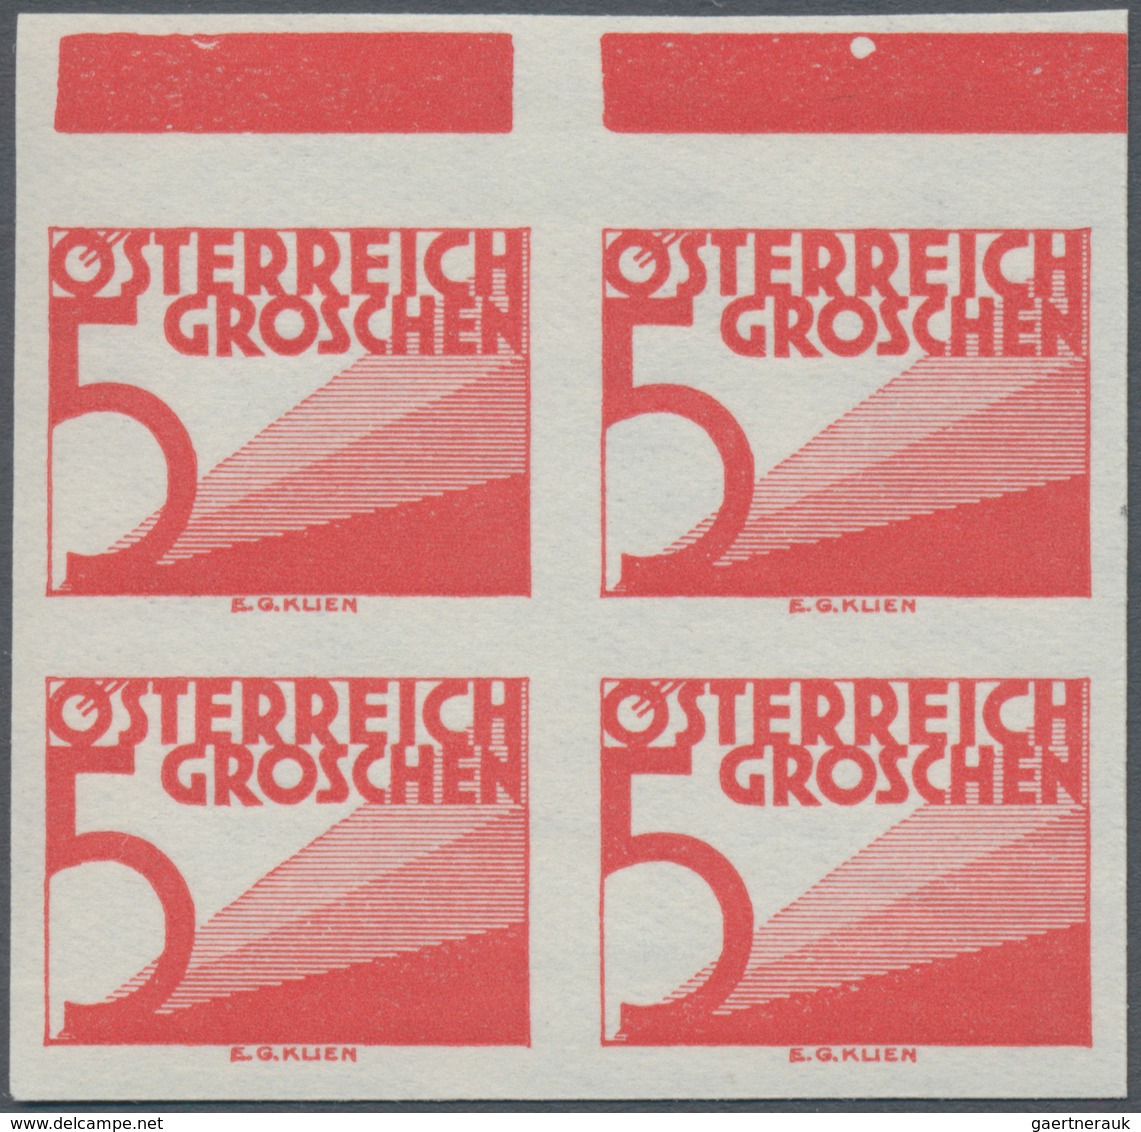 Österreich - Portomarken: 1925/1932, Ziffern, 5 Gr., 10 Gr., 12 Gr., 20 Gr., 24 Gr. Und 1 Sch. Je In - Postage Due